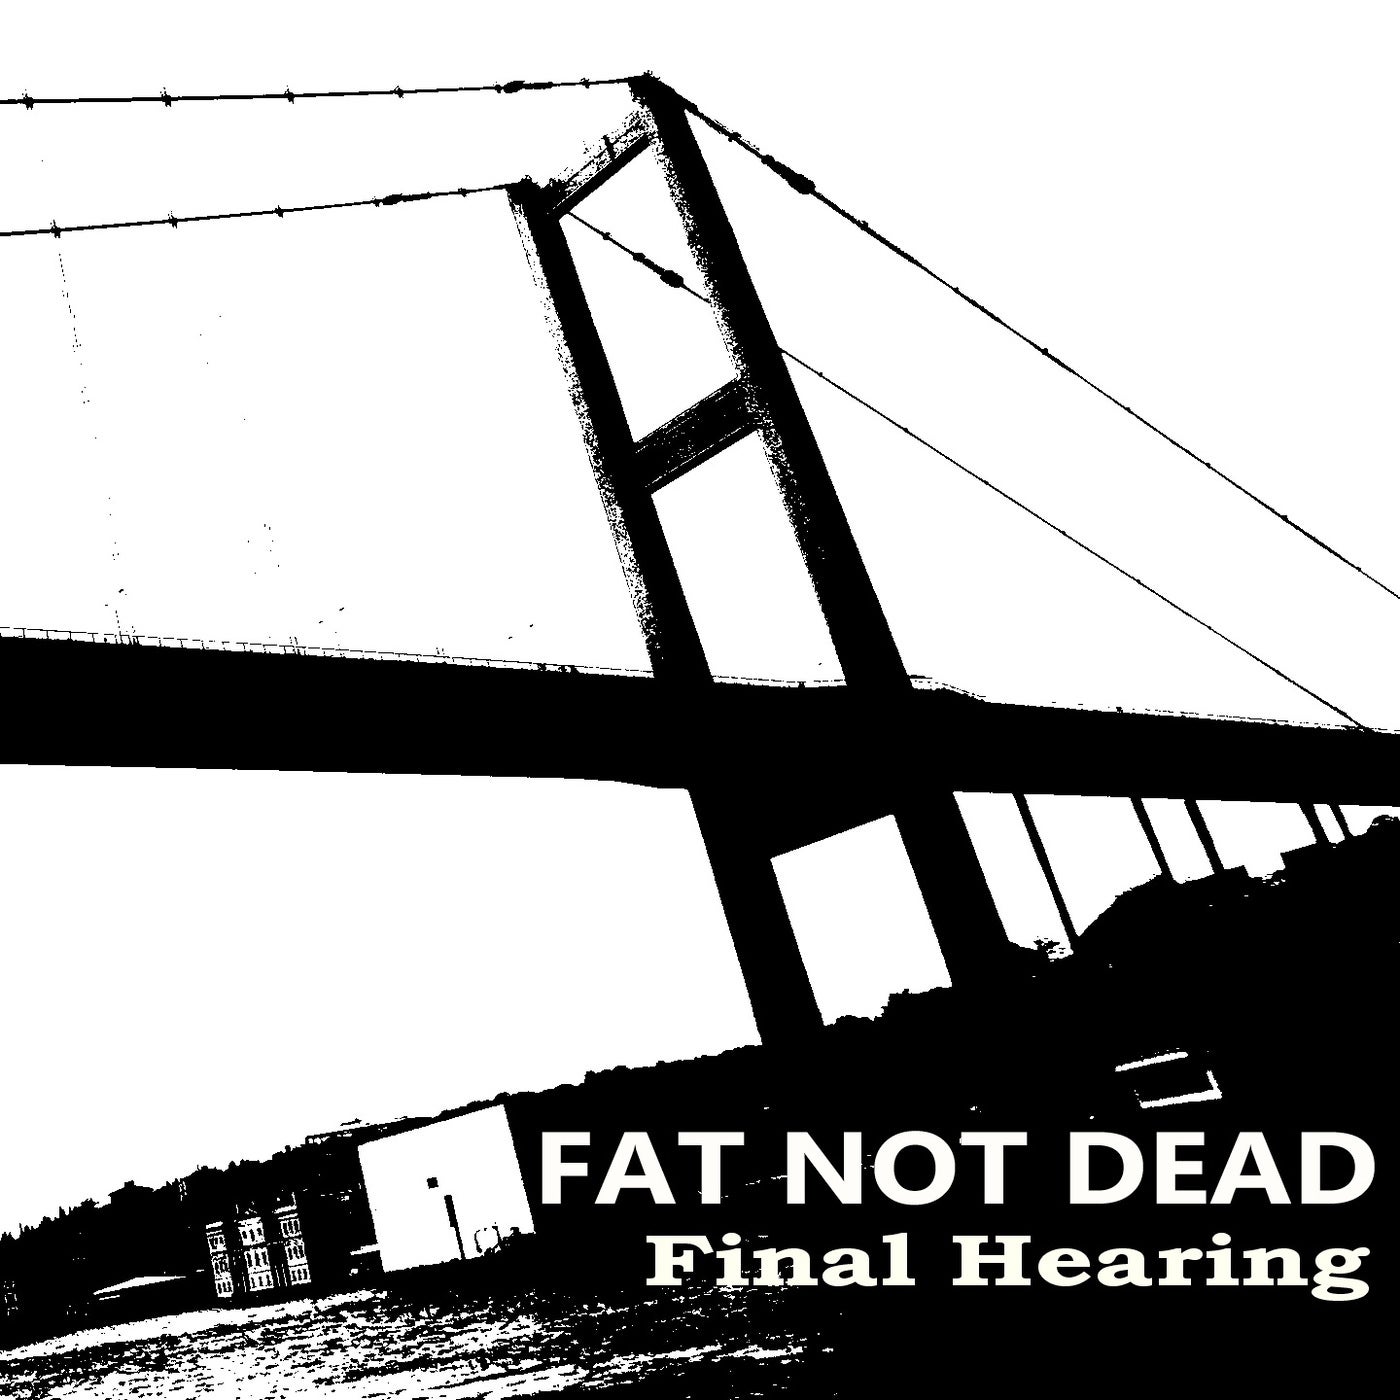 Final Hearing